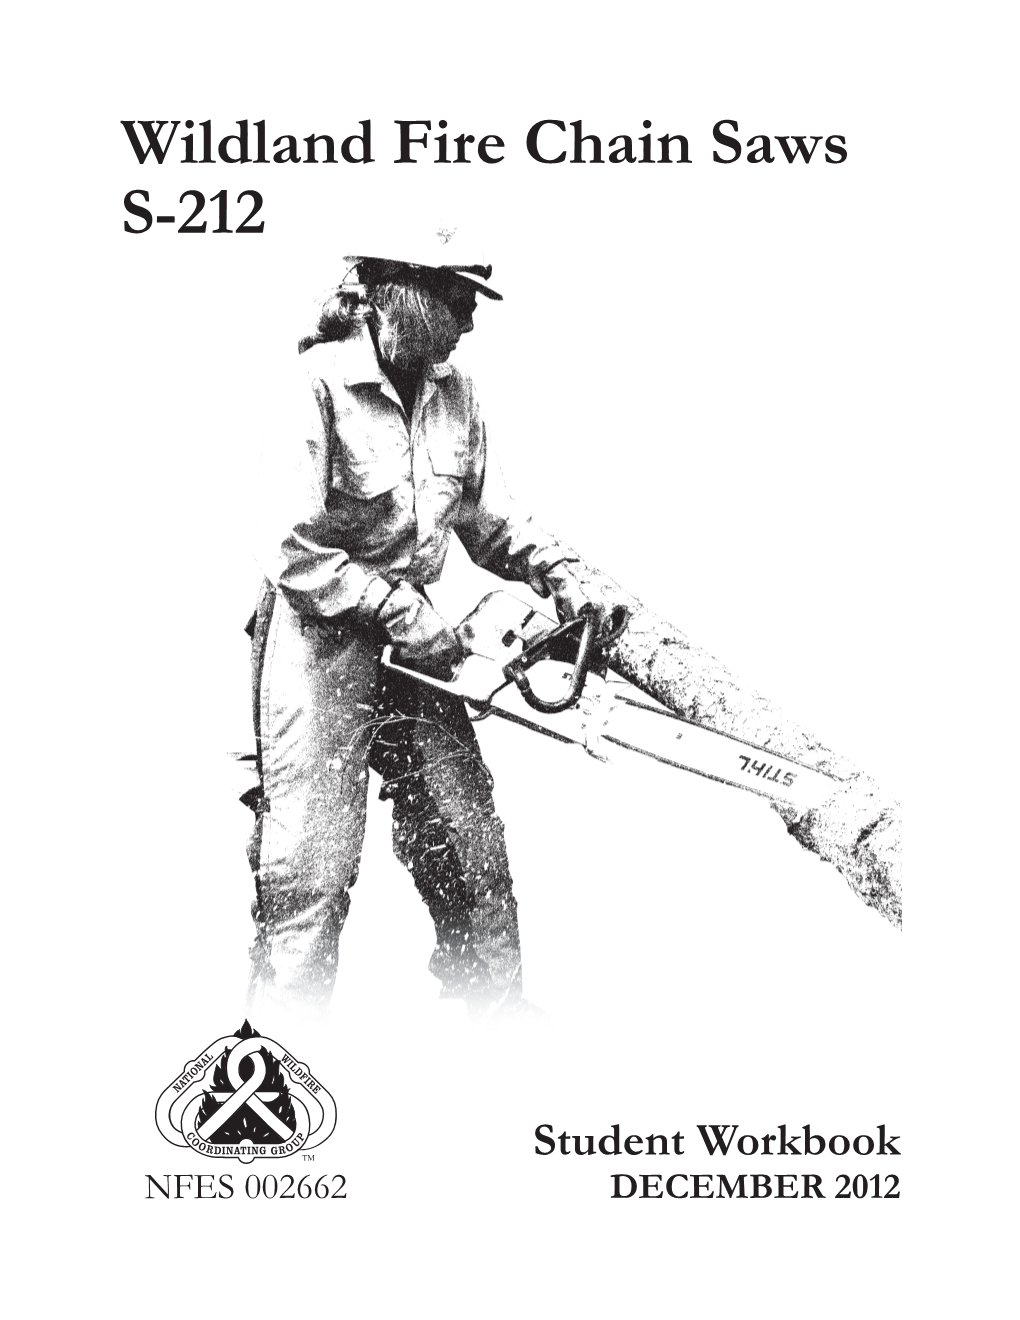 Wildland Fire Chain Saws Student Workbook